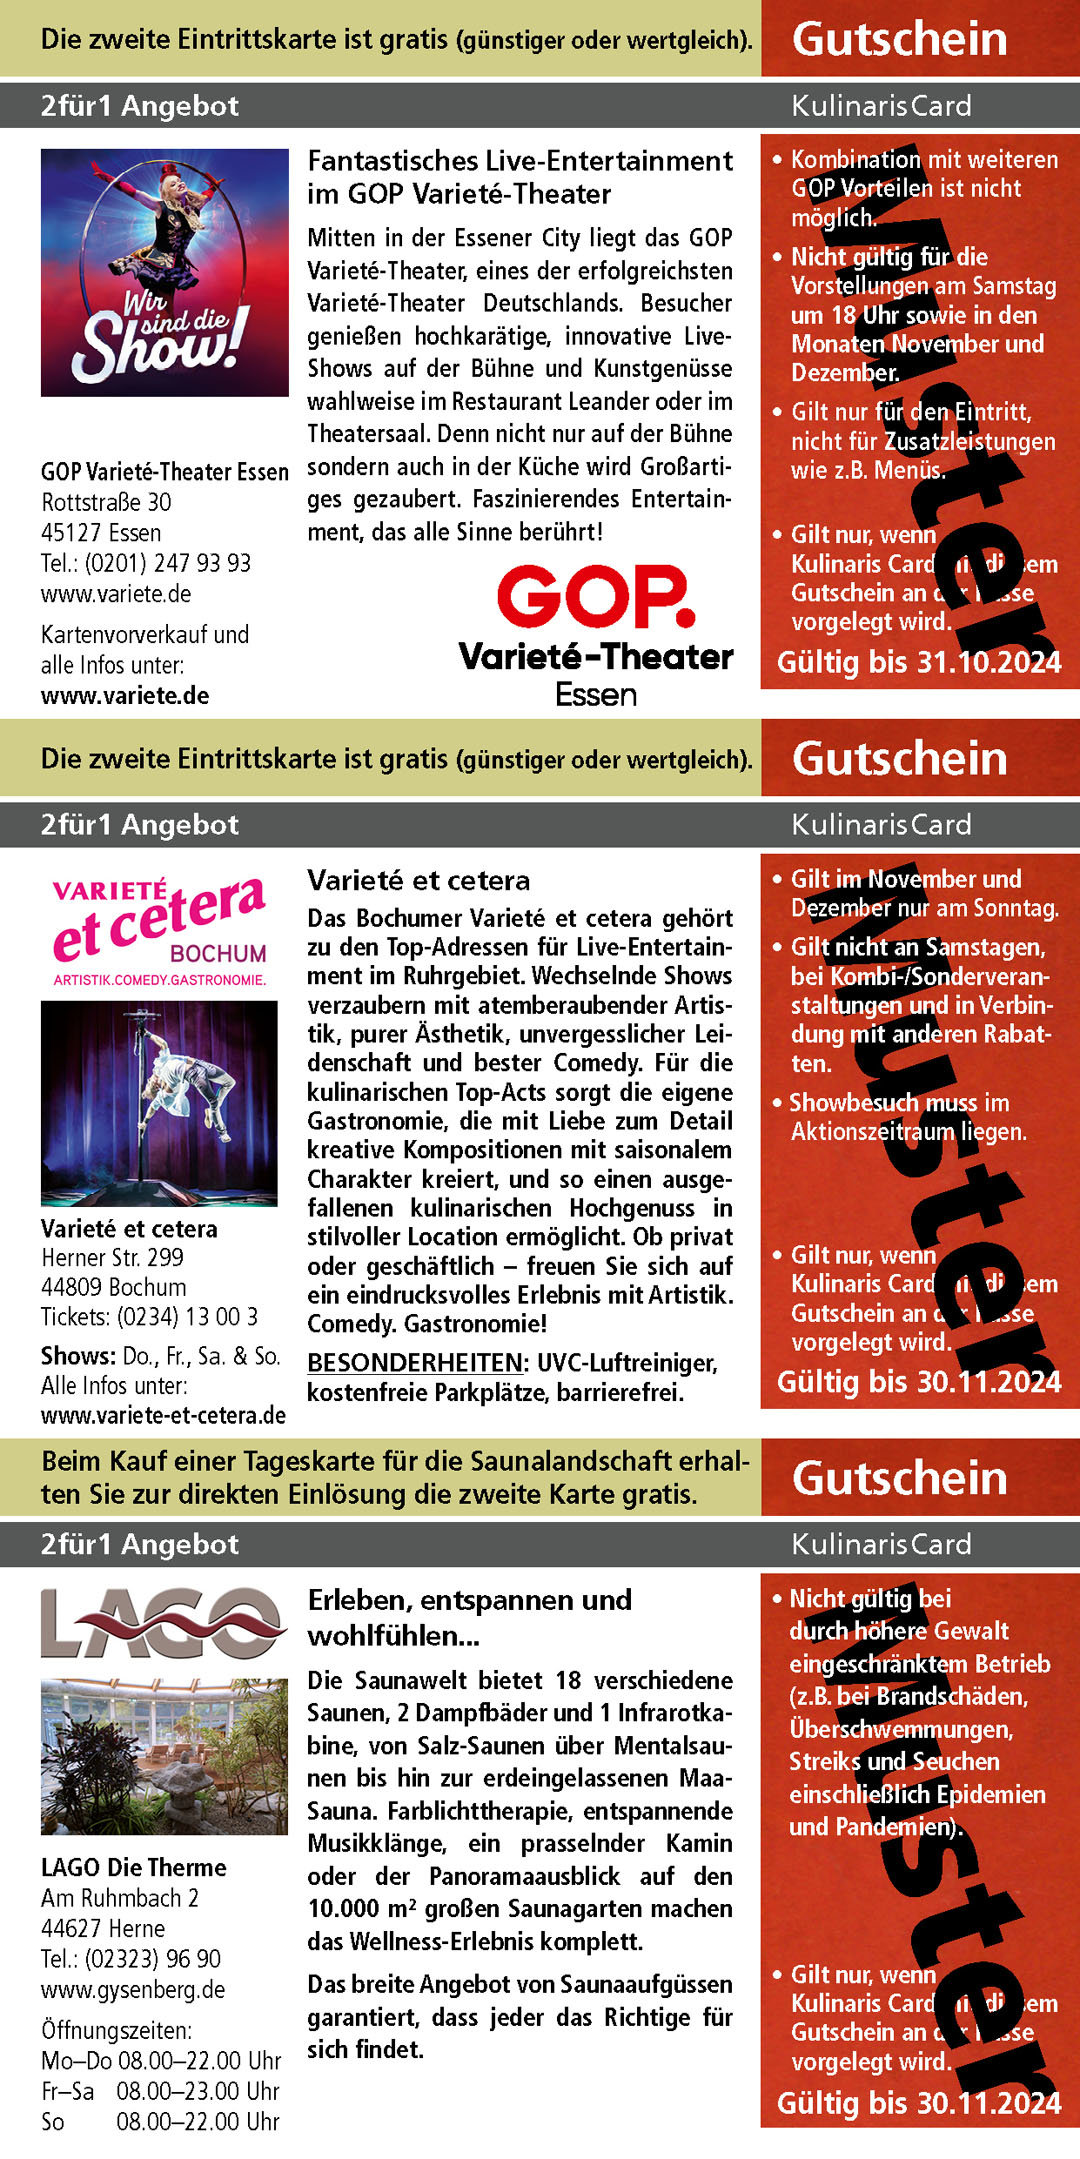 Gutschein_GOP_Varieté-Theater_Varieté_et_cetera_LAGO_Die_Therme_ Gutscheine_im_Ruhrgebiet_ www.gysenberg.de_ www.variete-et-cetera.de_ www.variete.de